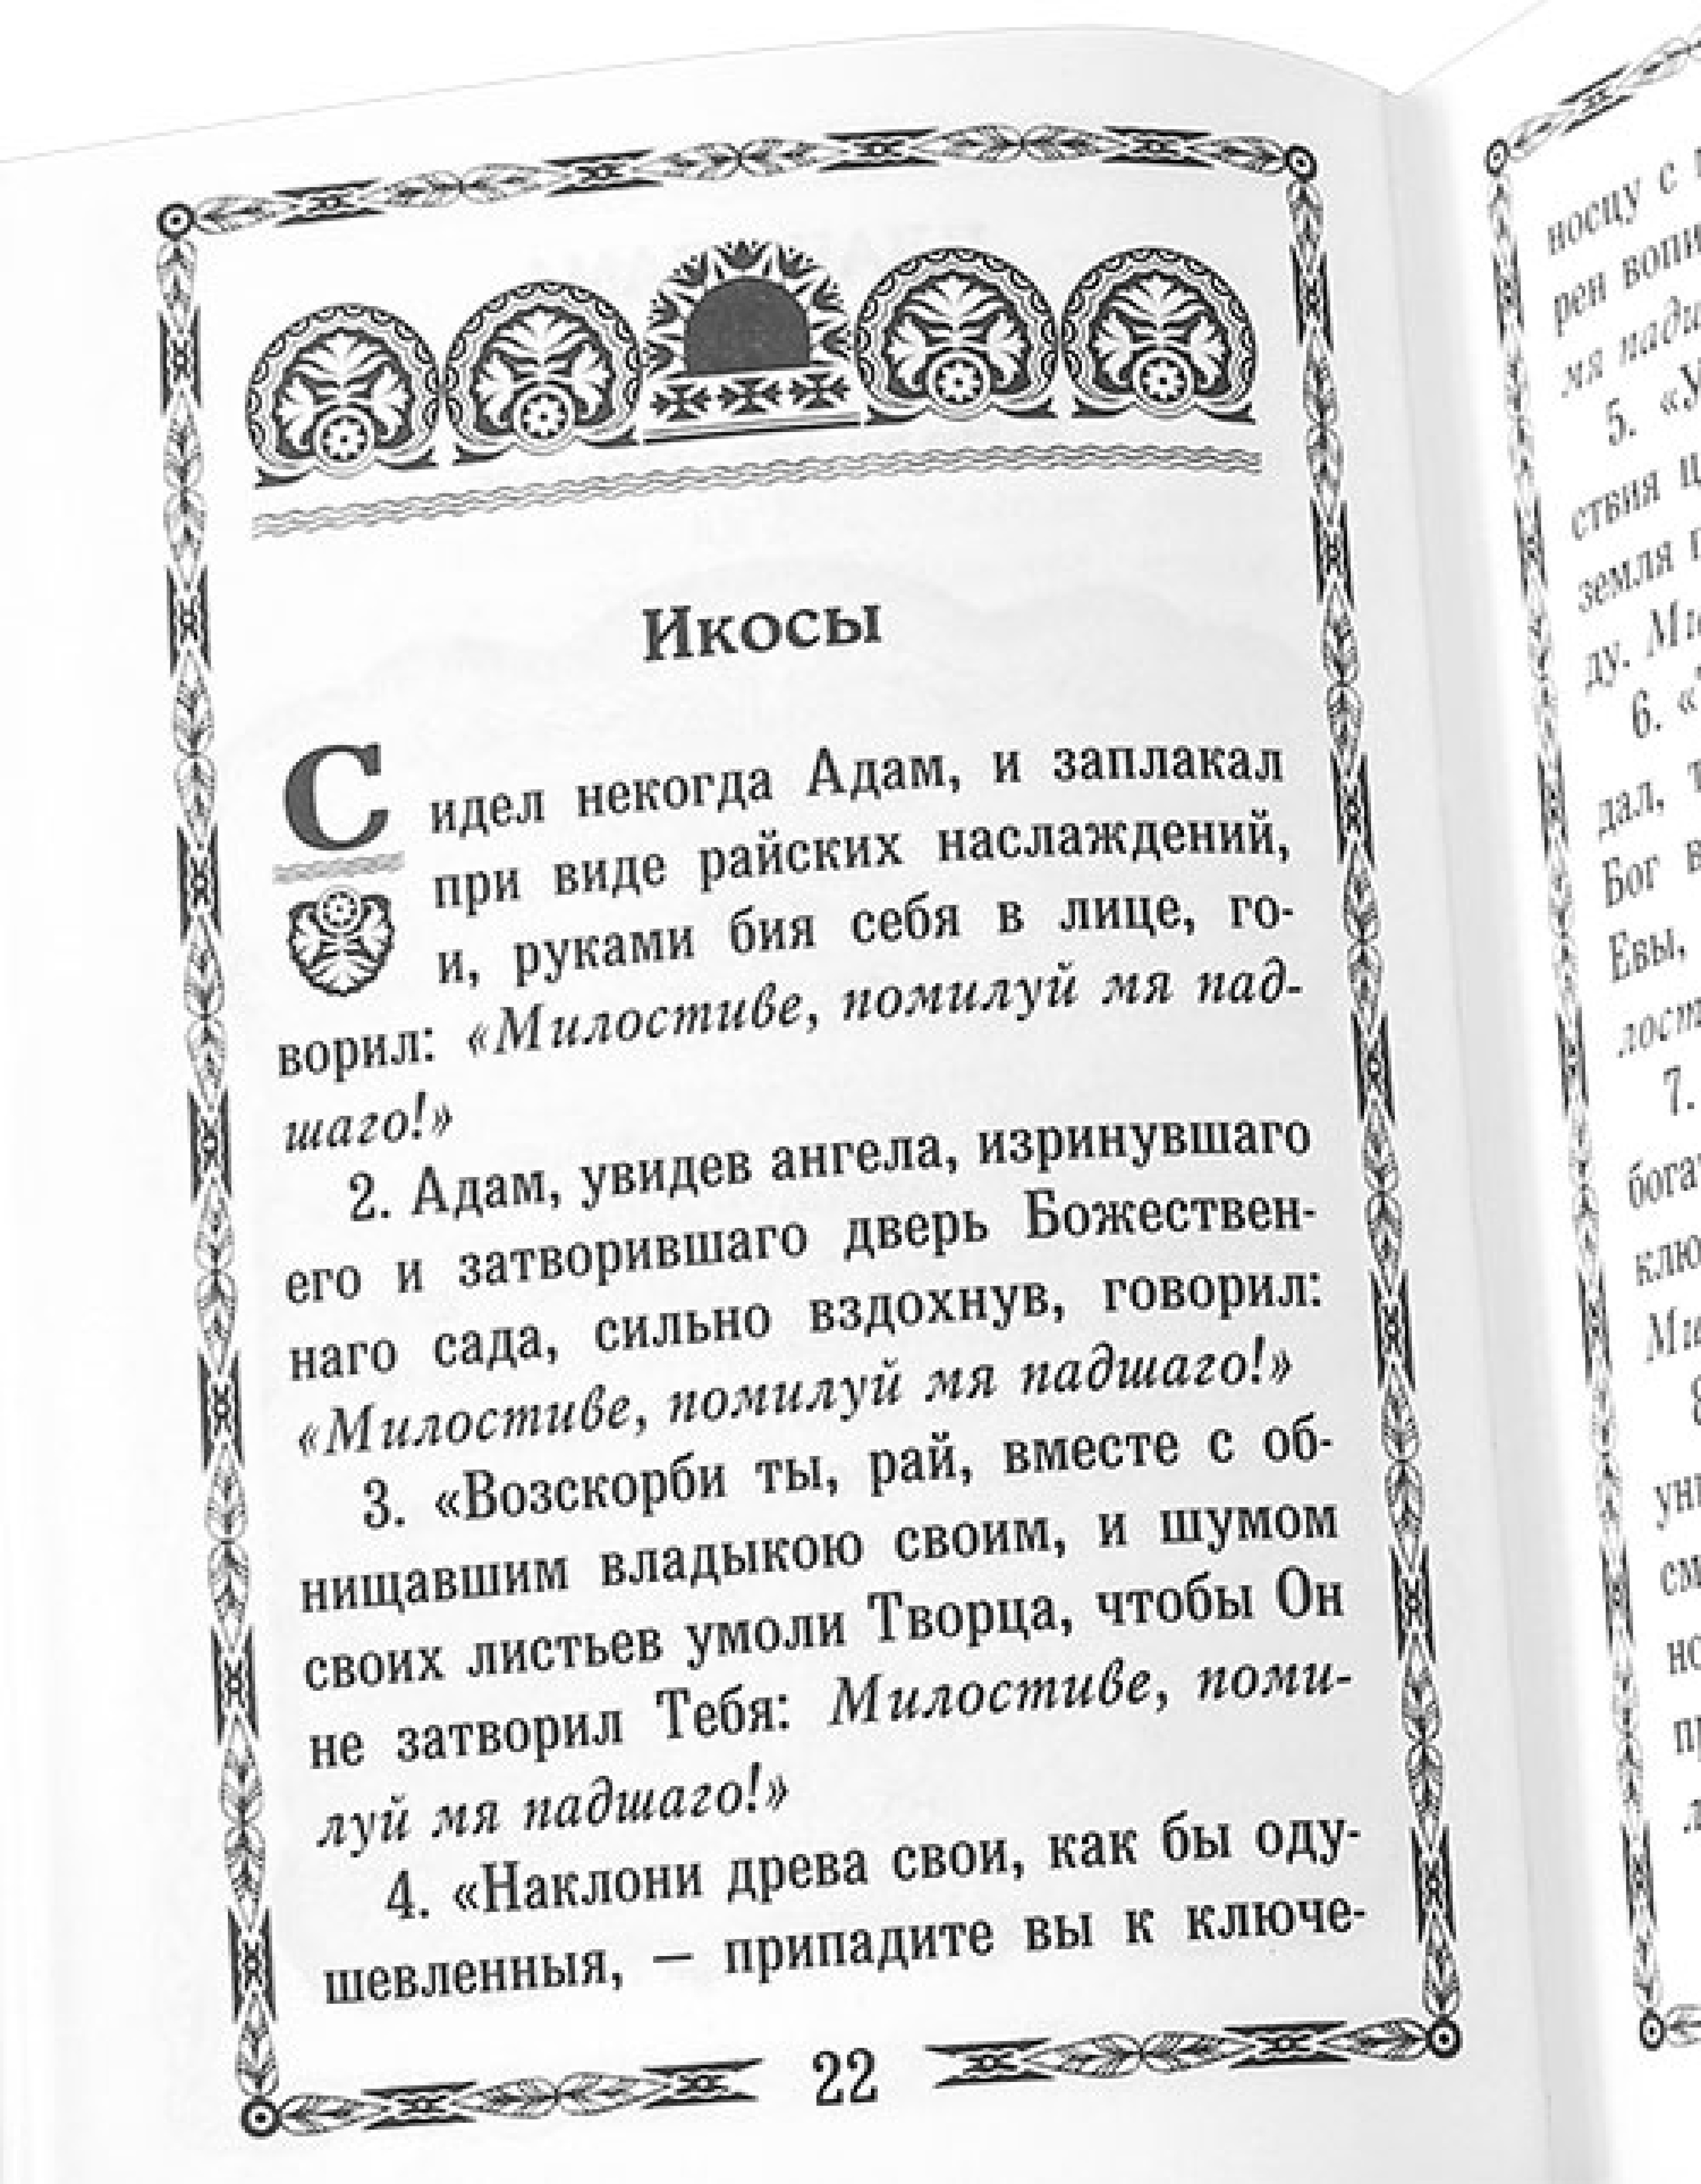 Откровения и хвала Бога в кондаках святого Романа Сладкопевца